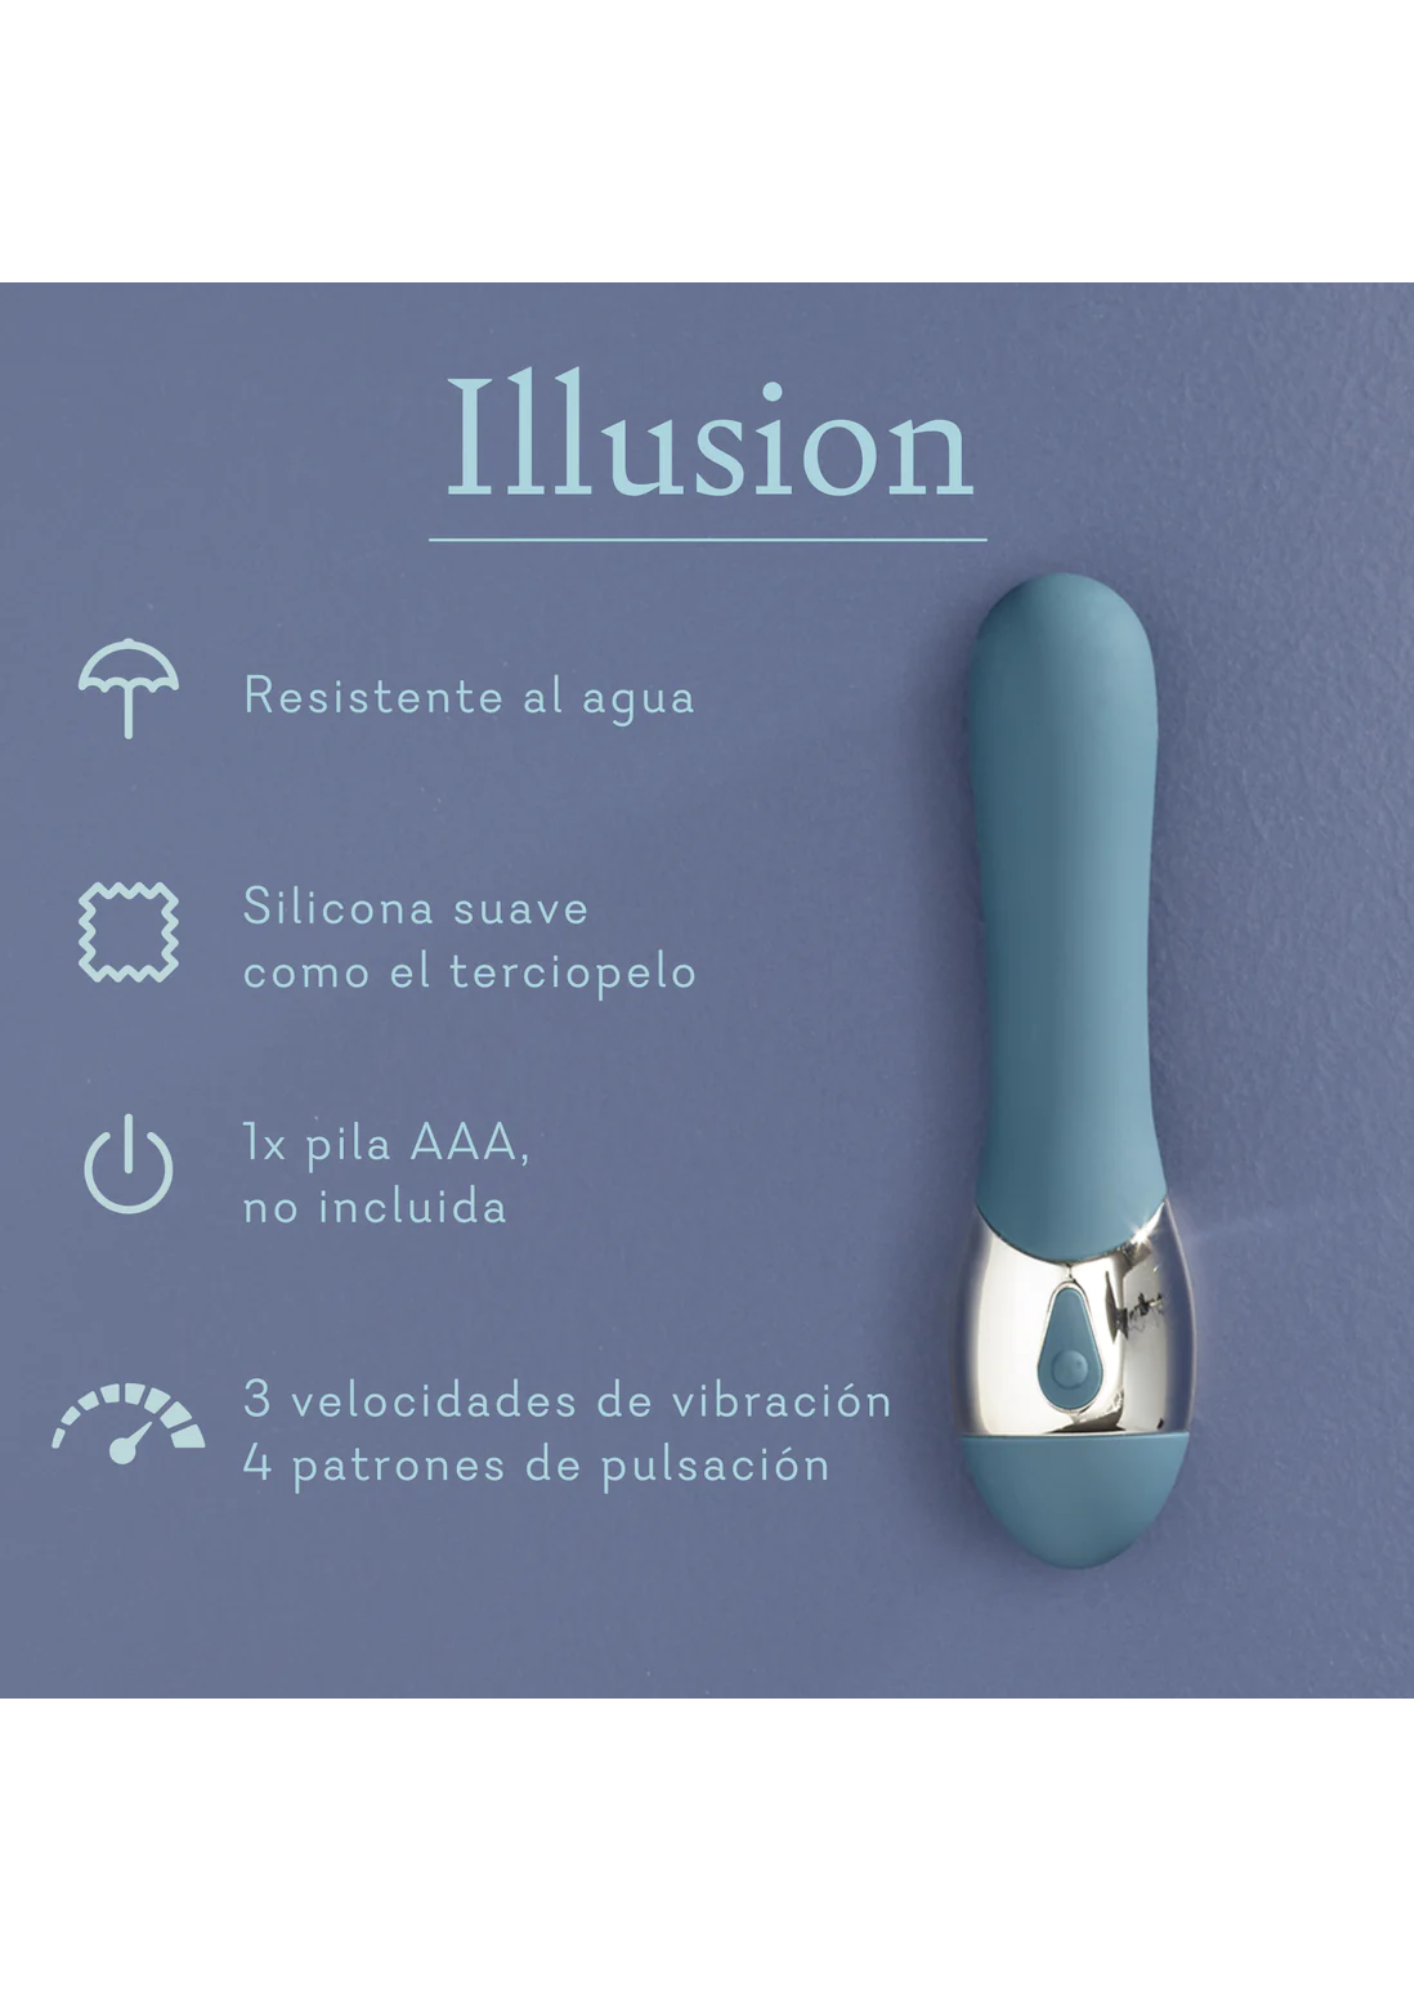 Illusion (83)